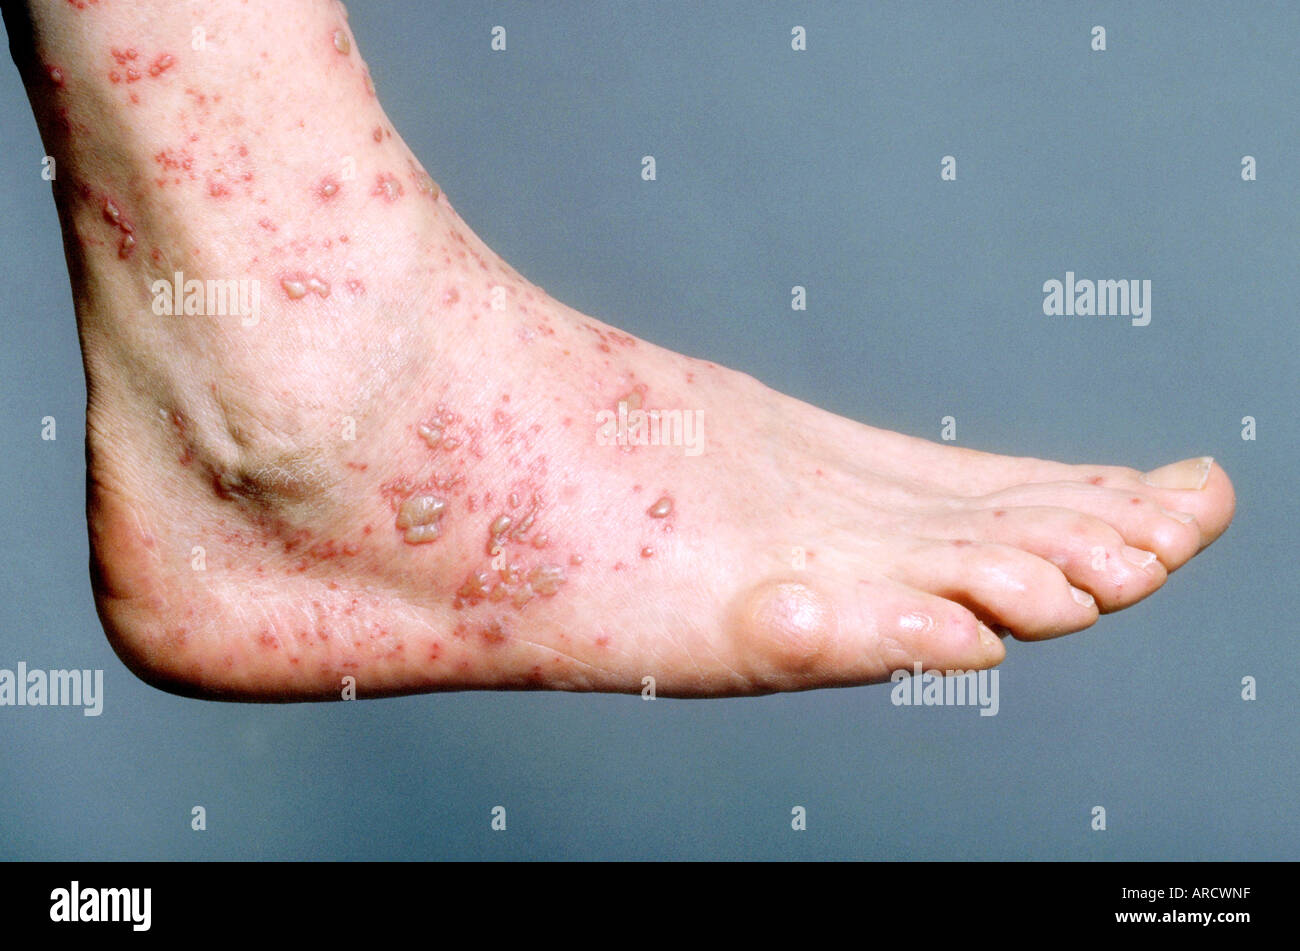 Ein Patient mit einer akuten vesikuläre Entzündung am Fuß durch das  Ansteigen der Windpocken-Virus, Varicella Zoster vi Stockfotografie - Alamy